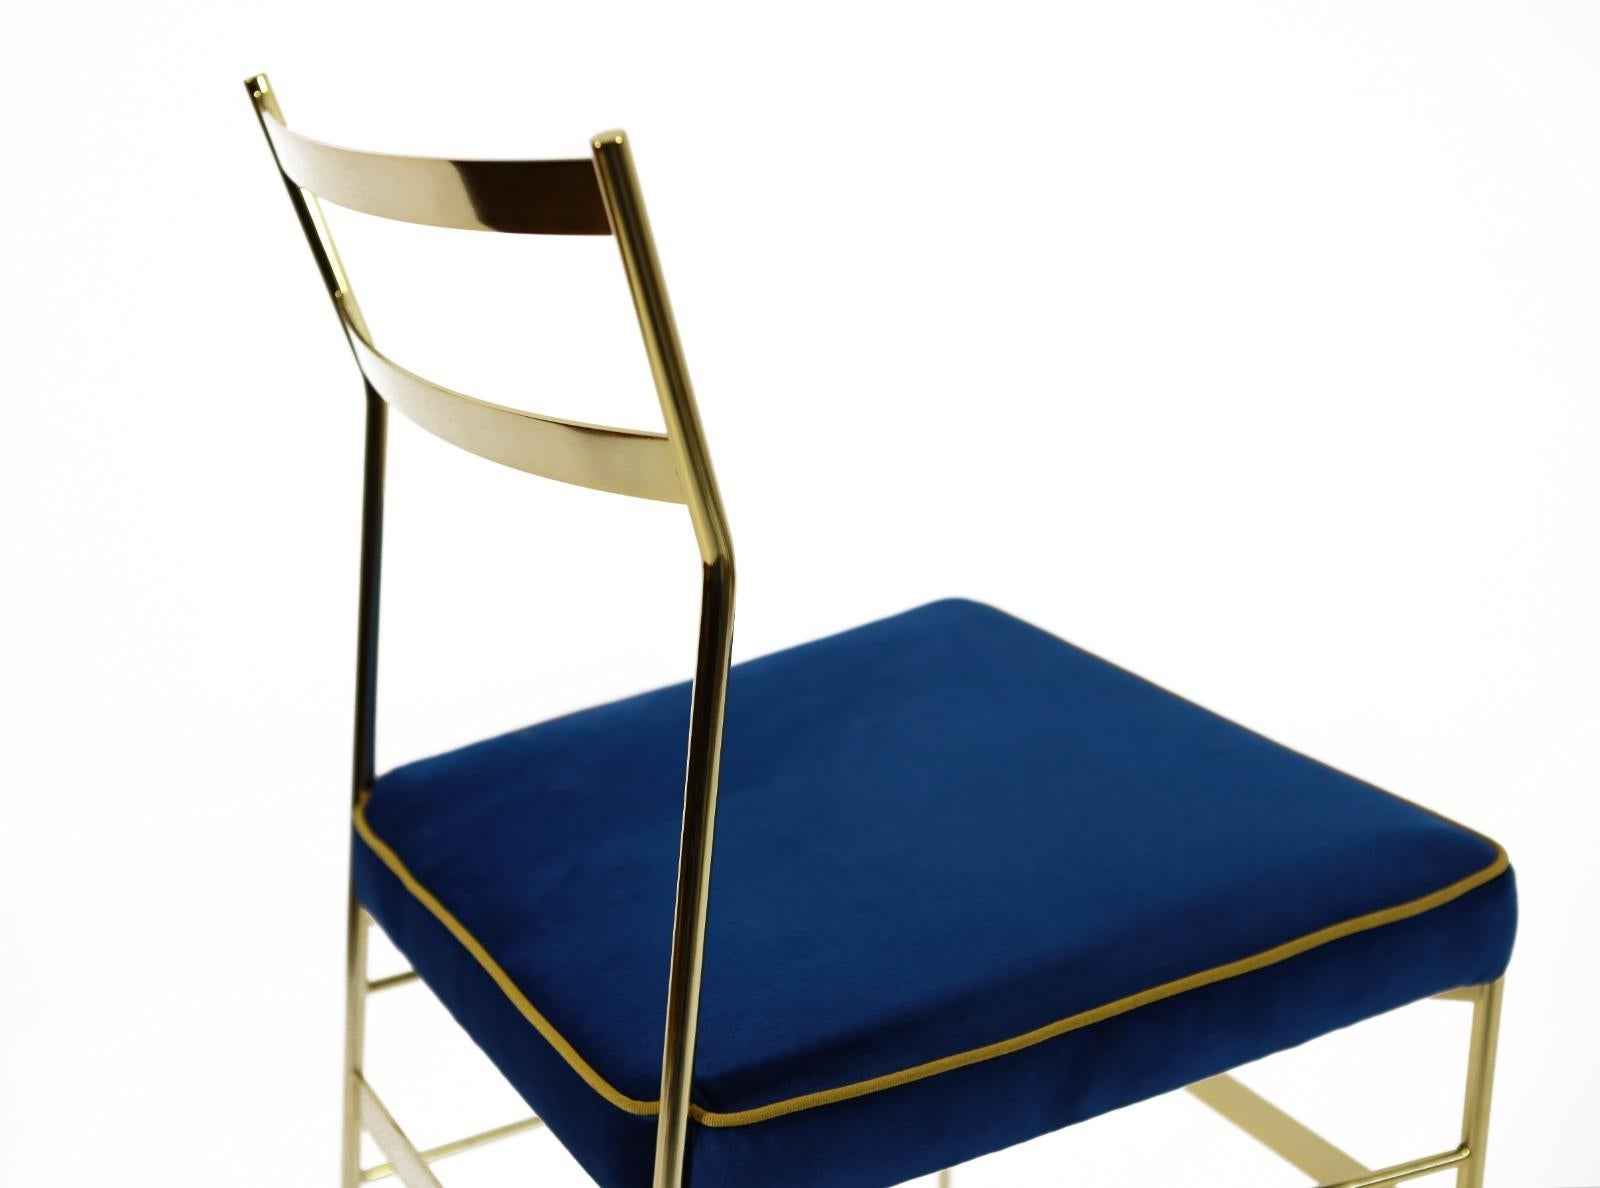 Dieser zeitlose Stuhl besteht aus einem Eisengestell, das mit einer 24-karätigen Goldbeschichtung überzogen ist, und eleganten Füßen aus verzinktem Messing. Die Sitze sind mit schmutzabweisendem PL-Samt bezogen und mit einer raffinierten goldgelben